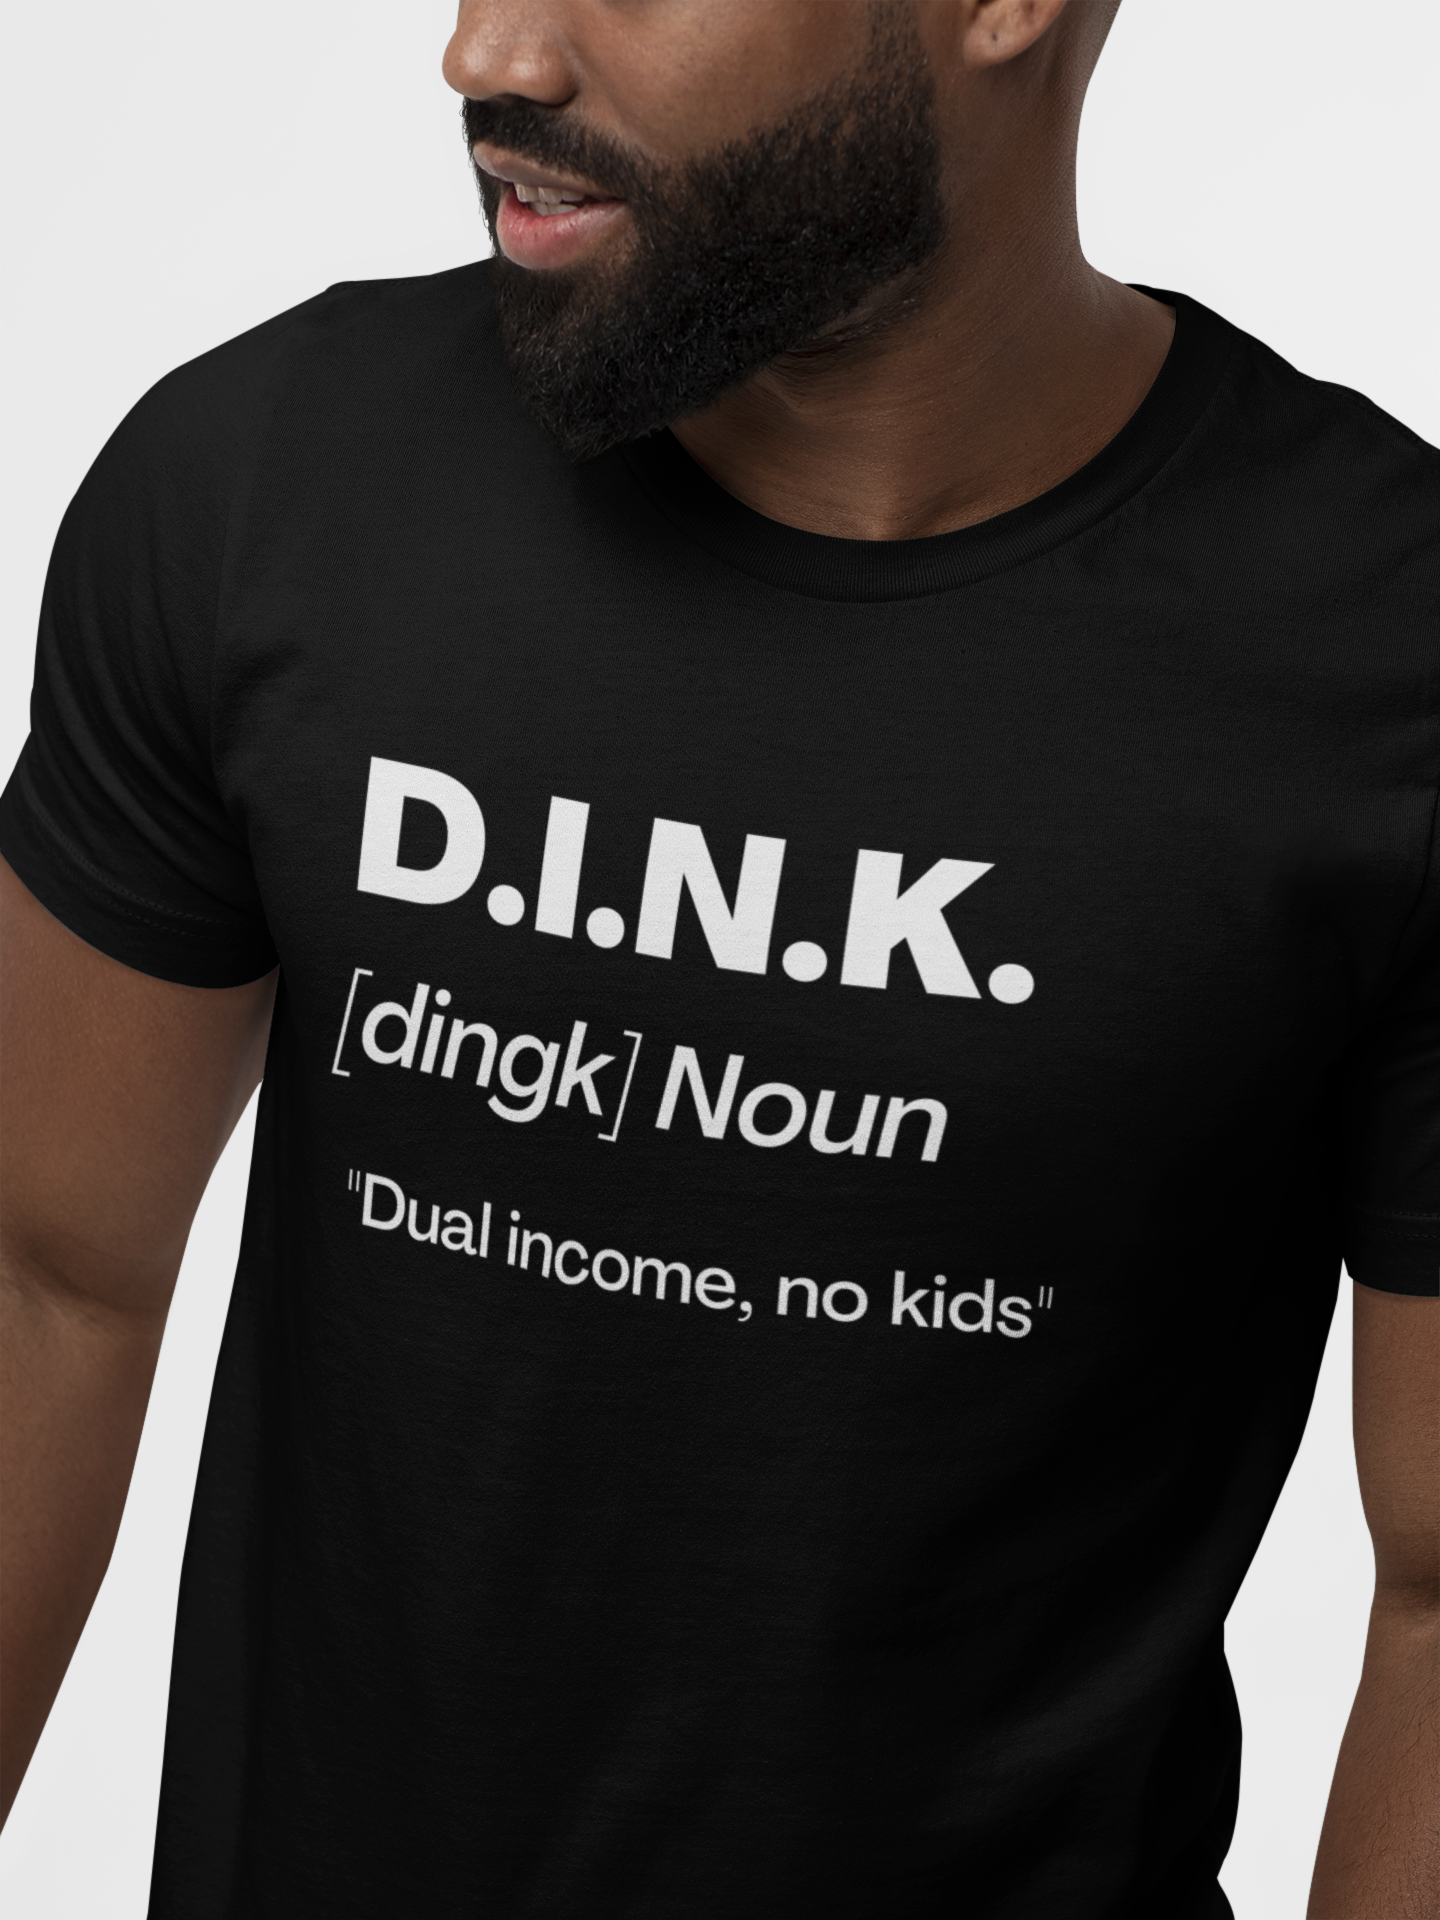 D.I.N.K. Definition Tee